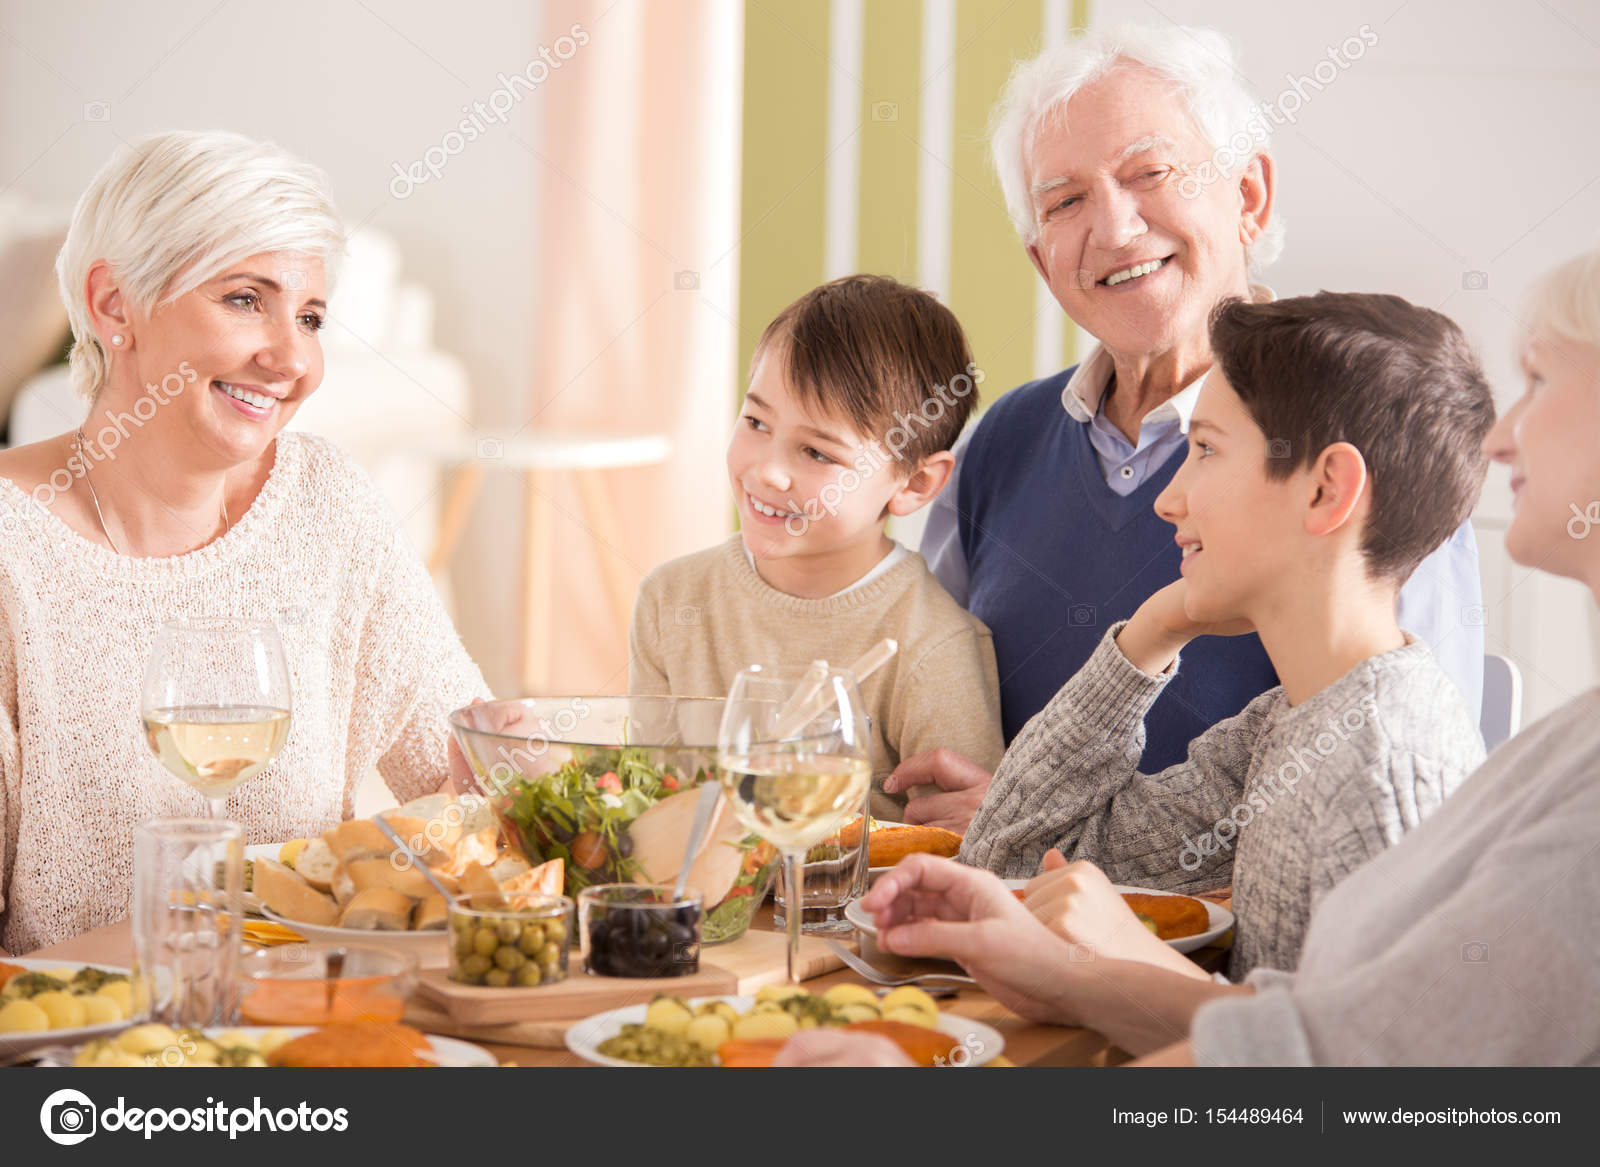 Dinner Stock Photo Of Family